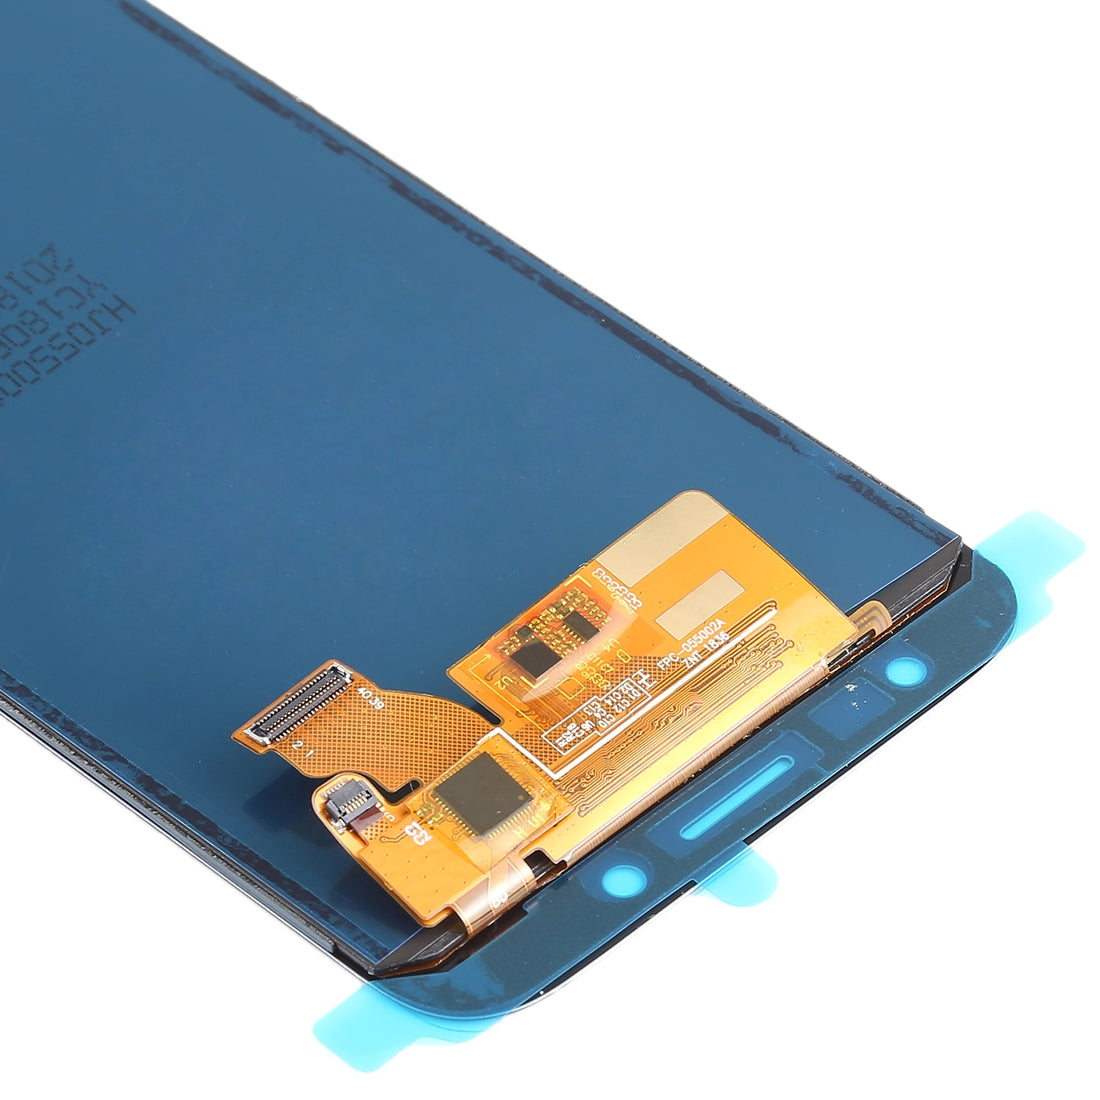 Ecran LCD + Vitre Tactile (TFT) Samsung Galaxy J7 (2017) J730 Bleu